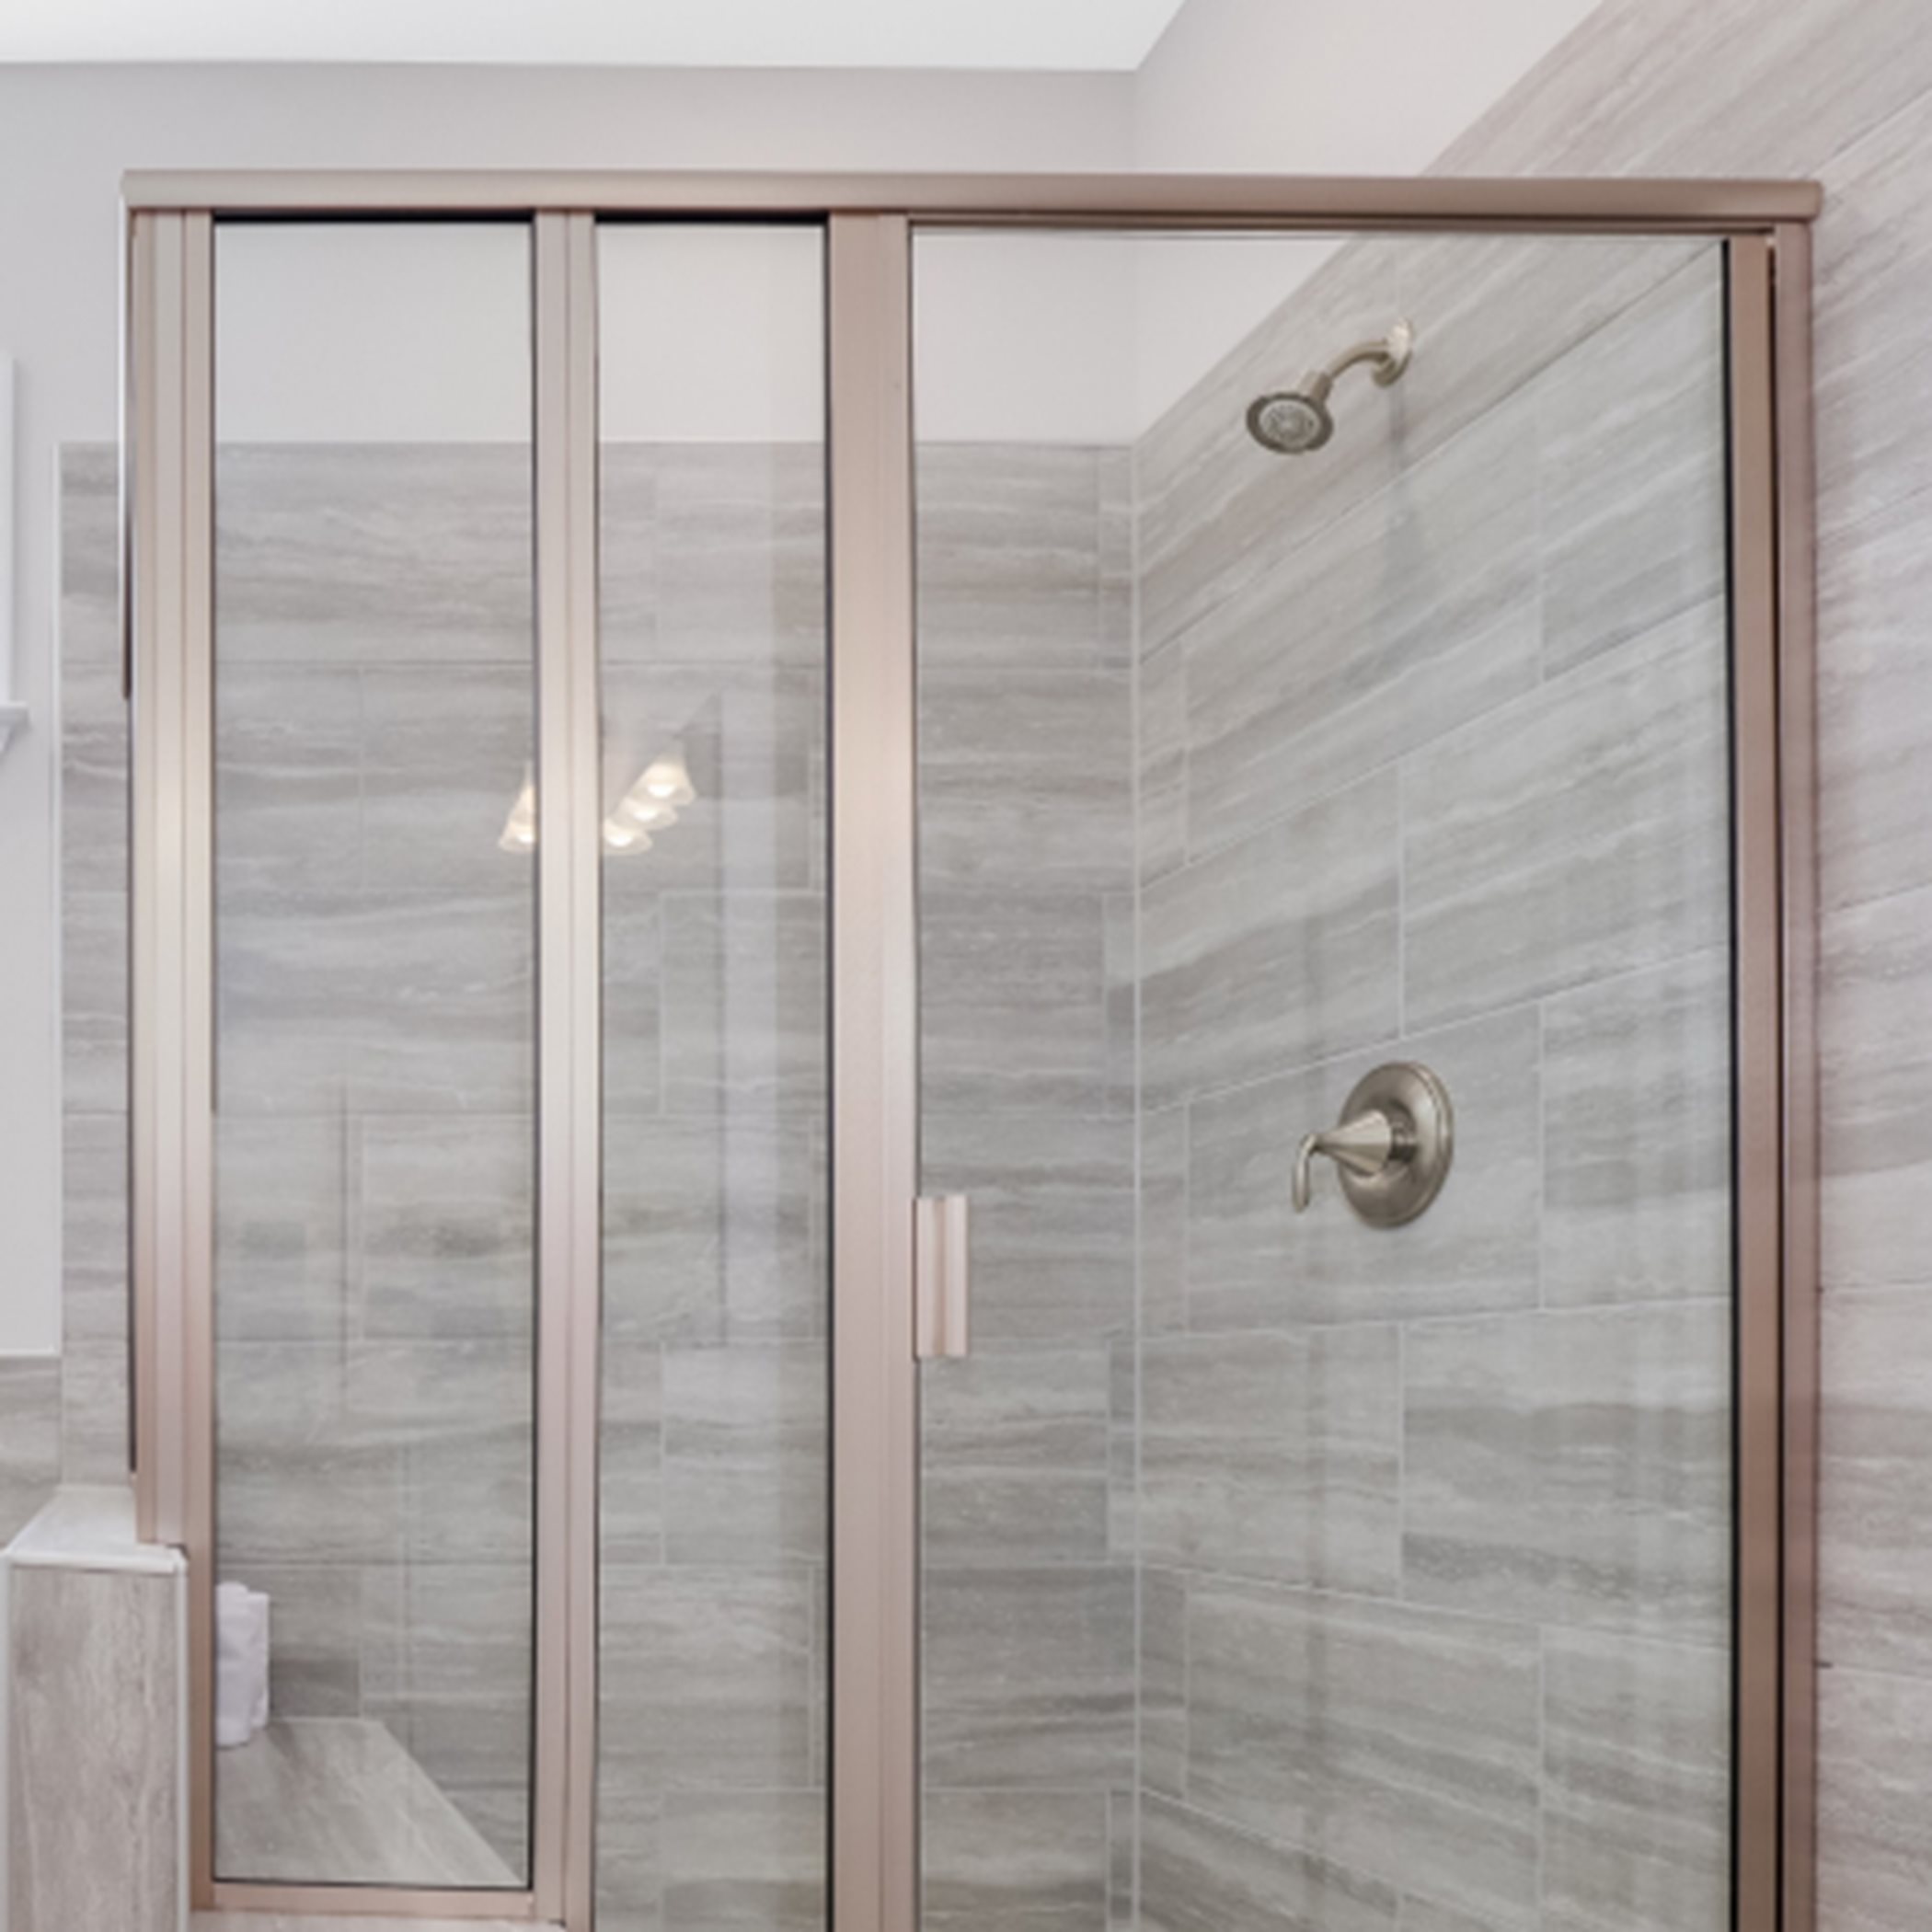 Winstead III Owner's Suite Shower